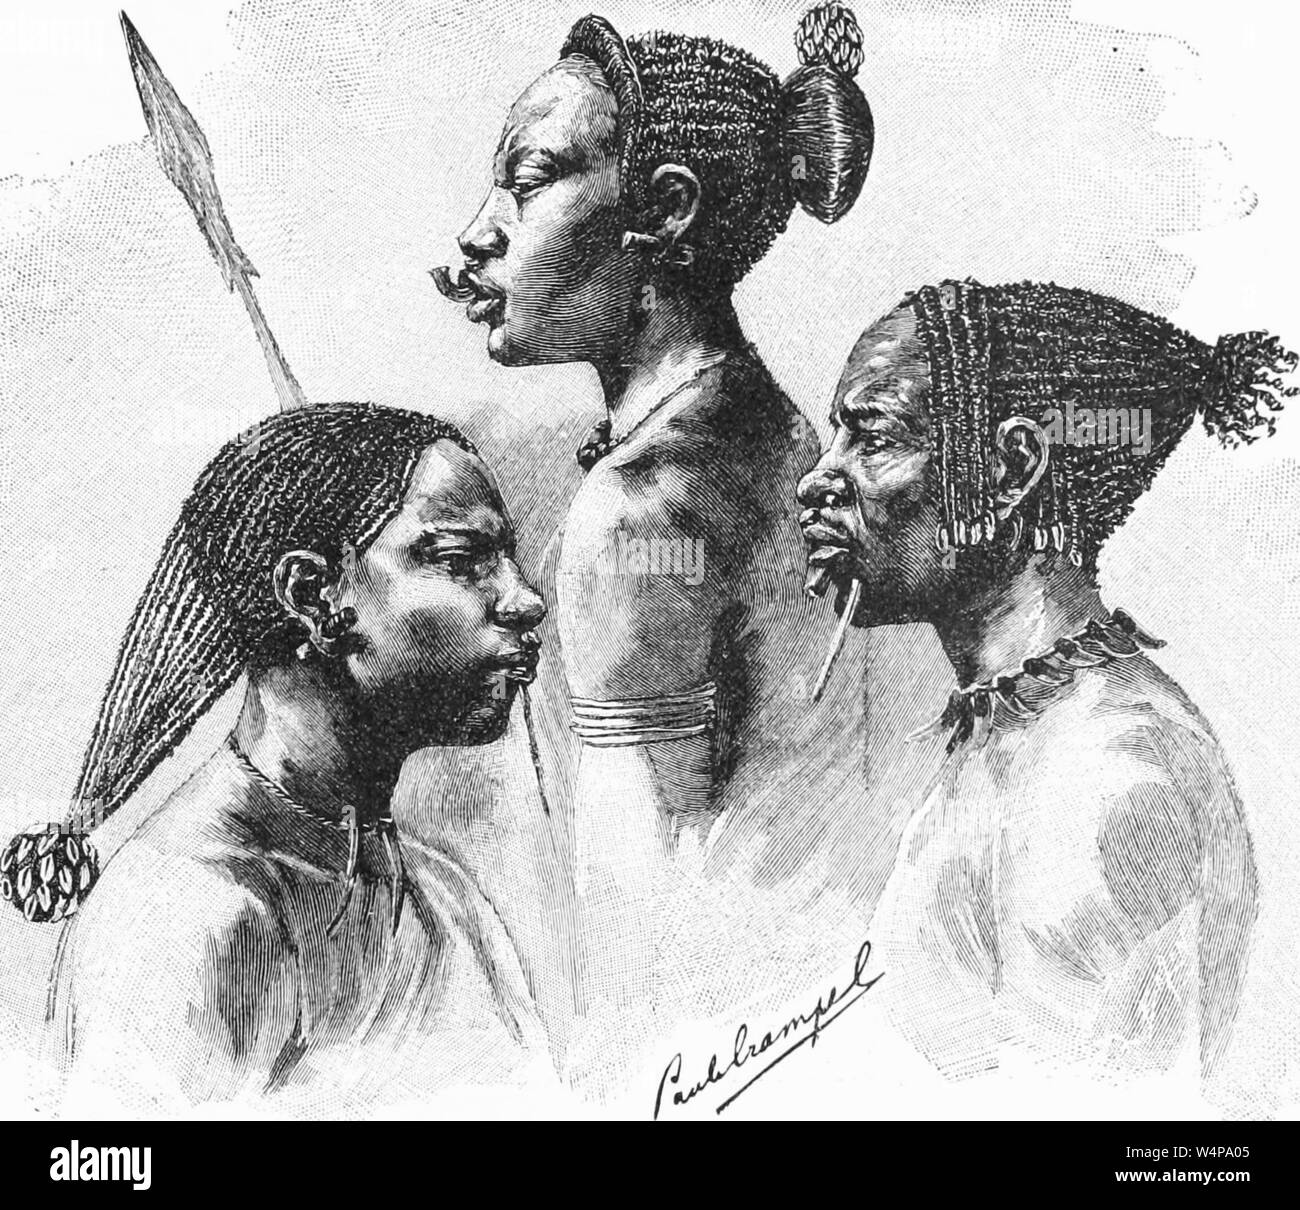 Dessin gravé de l'Langonassi tribu soudanaise, les gens du livre 'Ridpath's histoire universelle de l' de John Clark Ridpath, 1897. Avec la permission de Internet Archive. () Banque D'Images